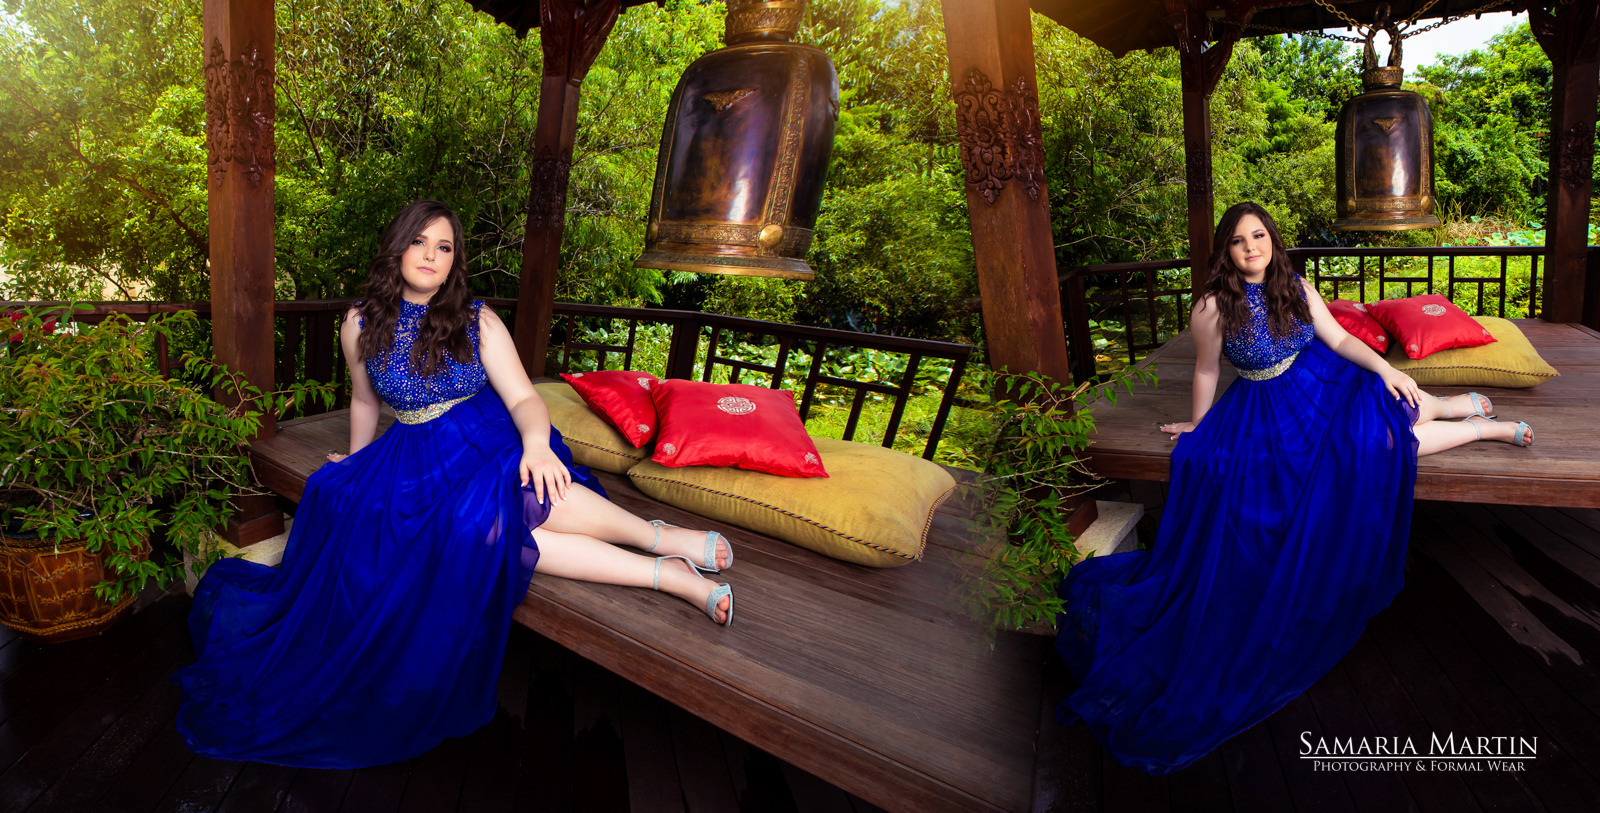 Fotos de quince en Florida, quinceanera with blue dress, tienda de vestidos de quinces, quinceanera dresses websites, cheap quinceanera dresses